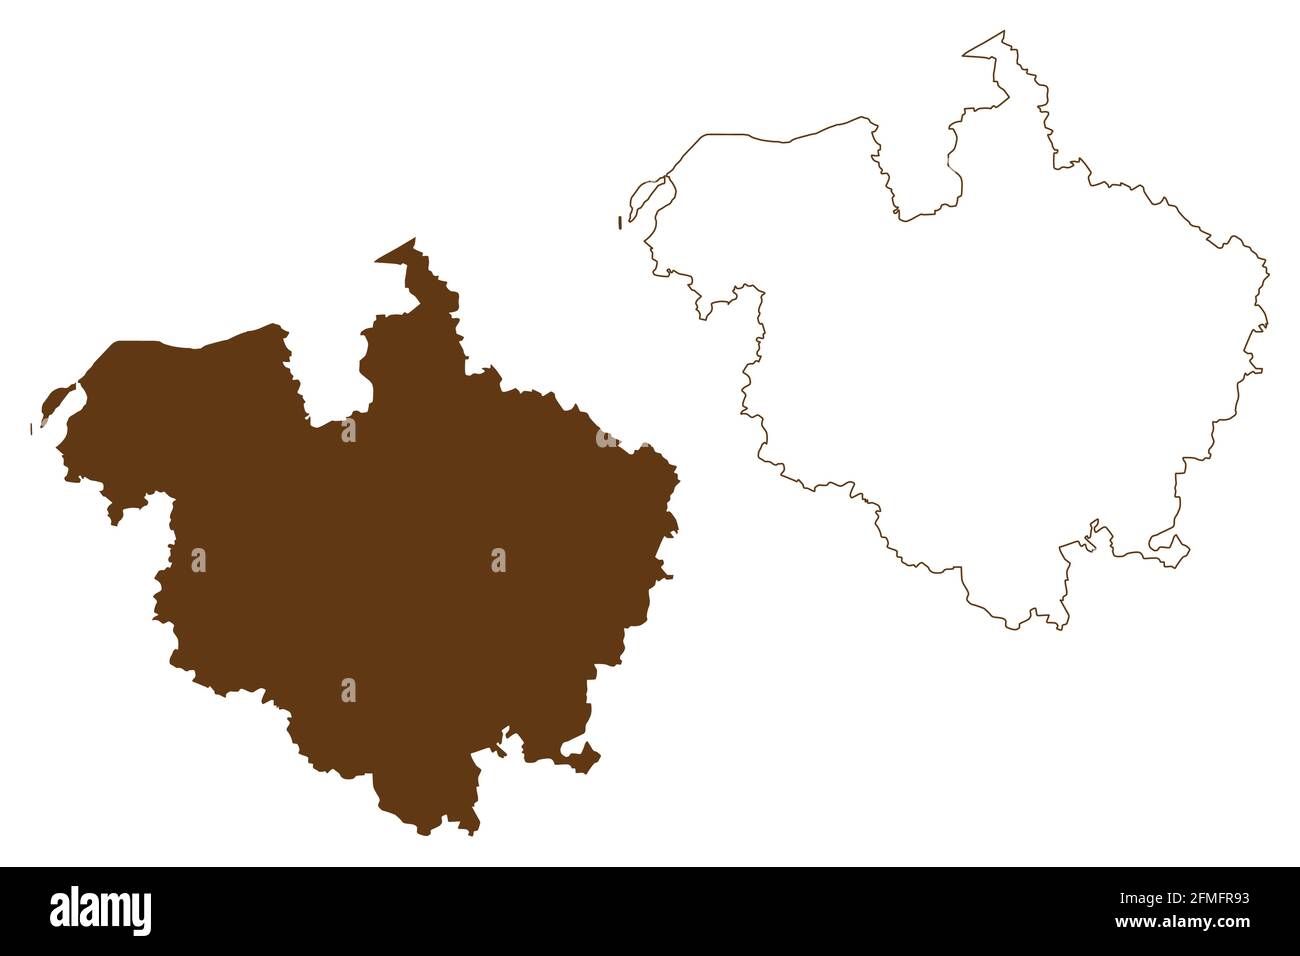 Landkreis Rostock (Bundesrepublik Deutschland, Landkreis, Bundesland Mecklenburg-Vorpommern, Vorpommern oder West) Kartenvektordarstellung, sc Stock Vektor